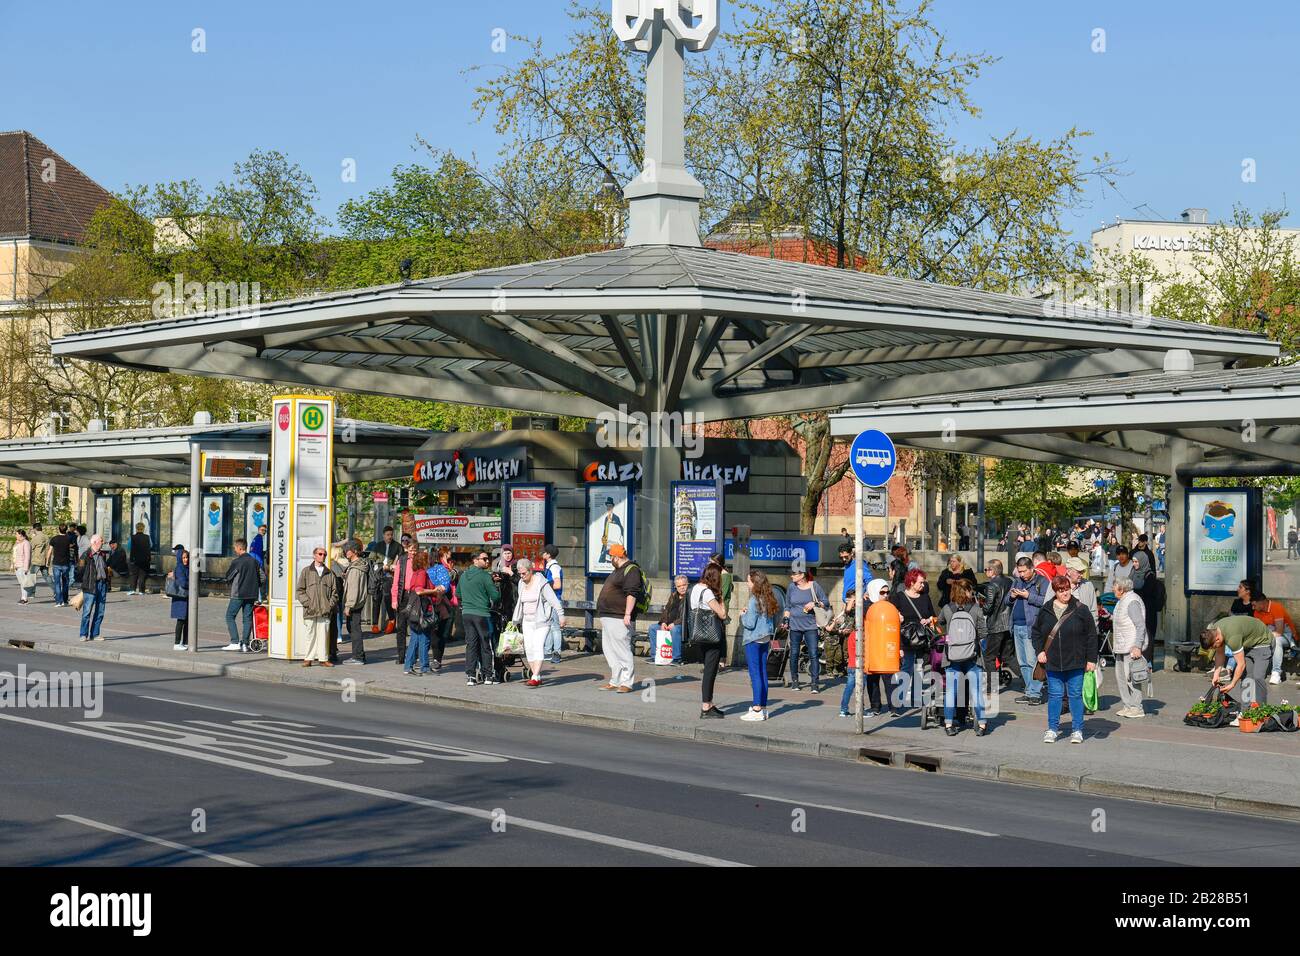 Bushaltestelle, Altstädter Ring, Spandau, Berlin, Deutschland Stock Photo